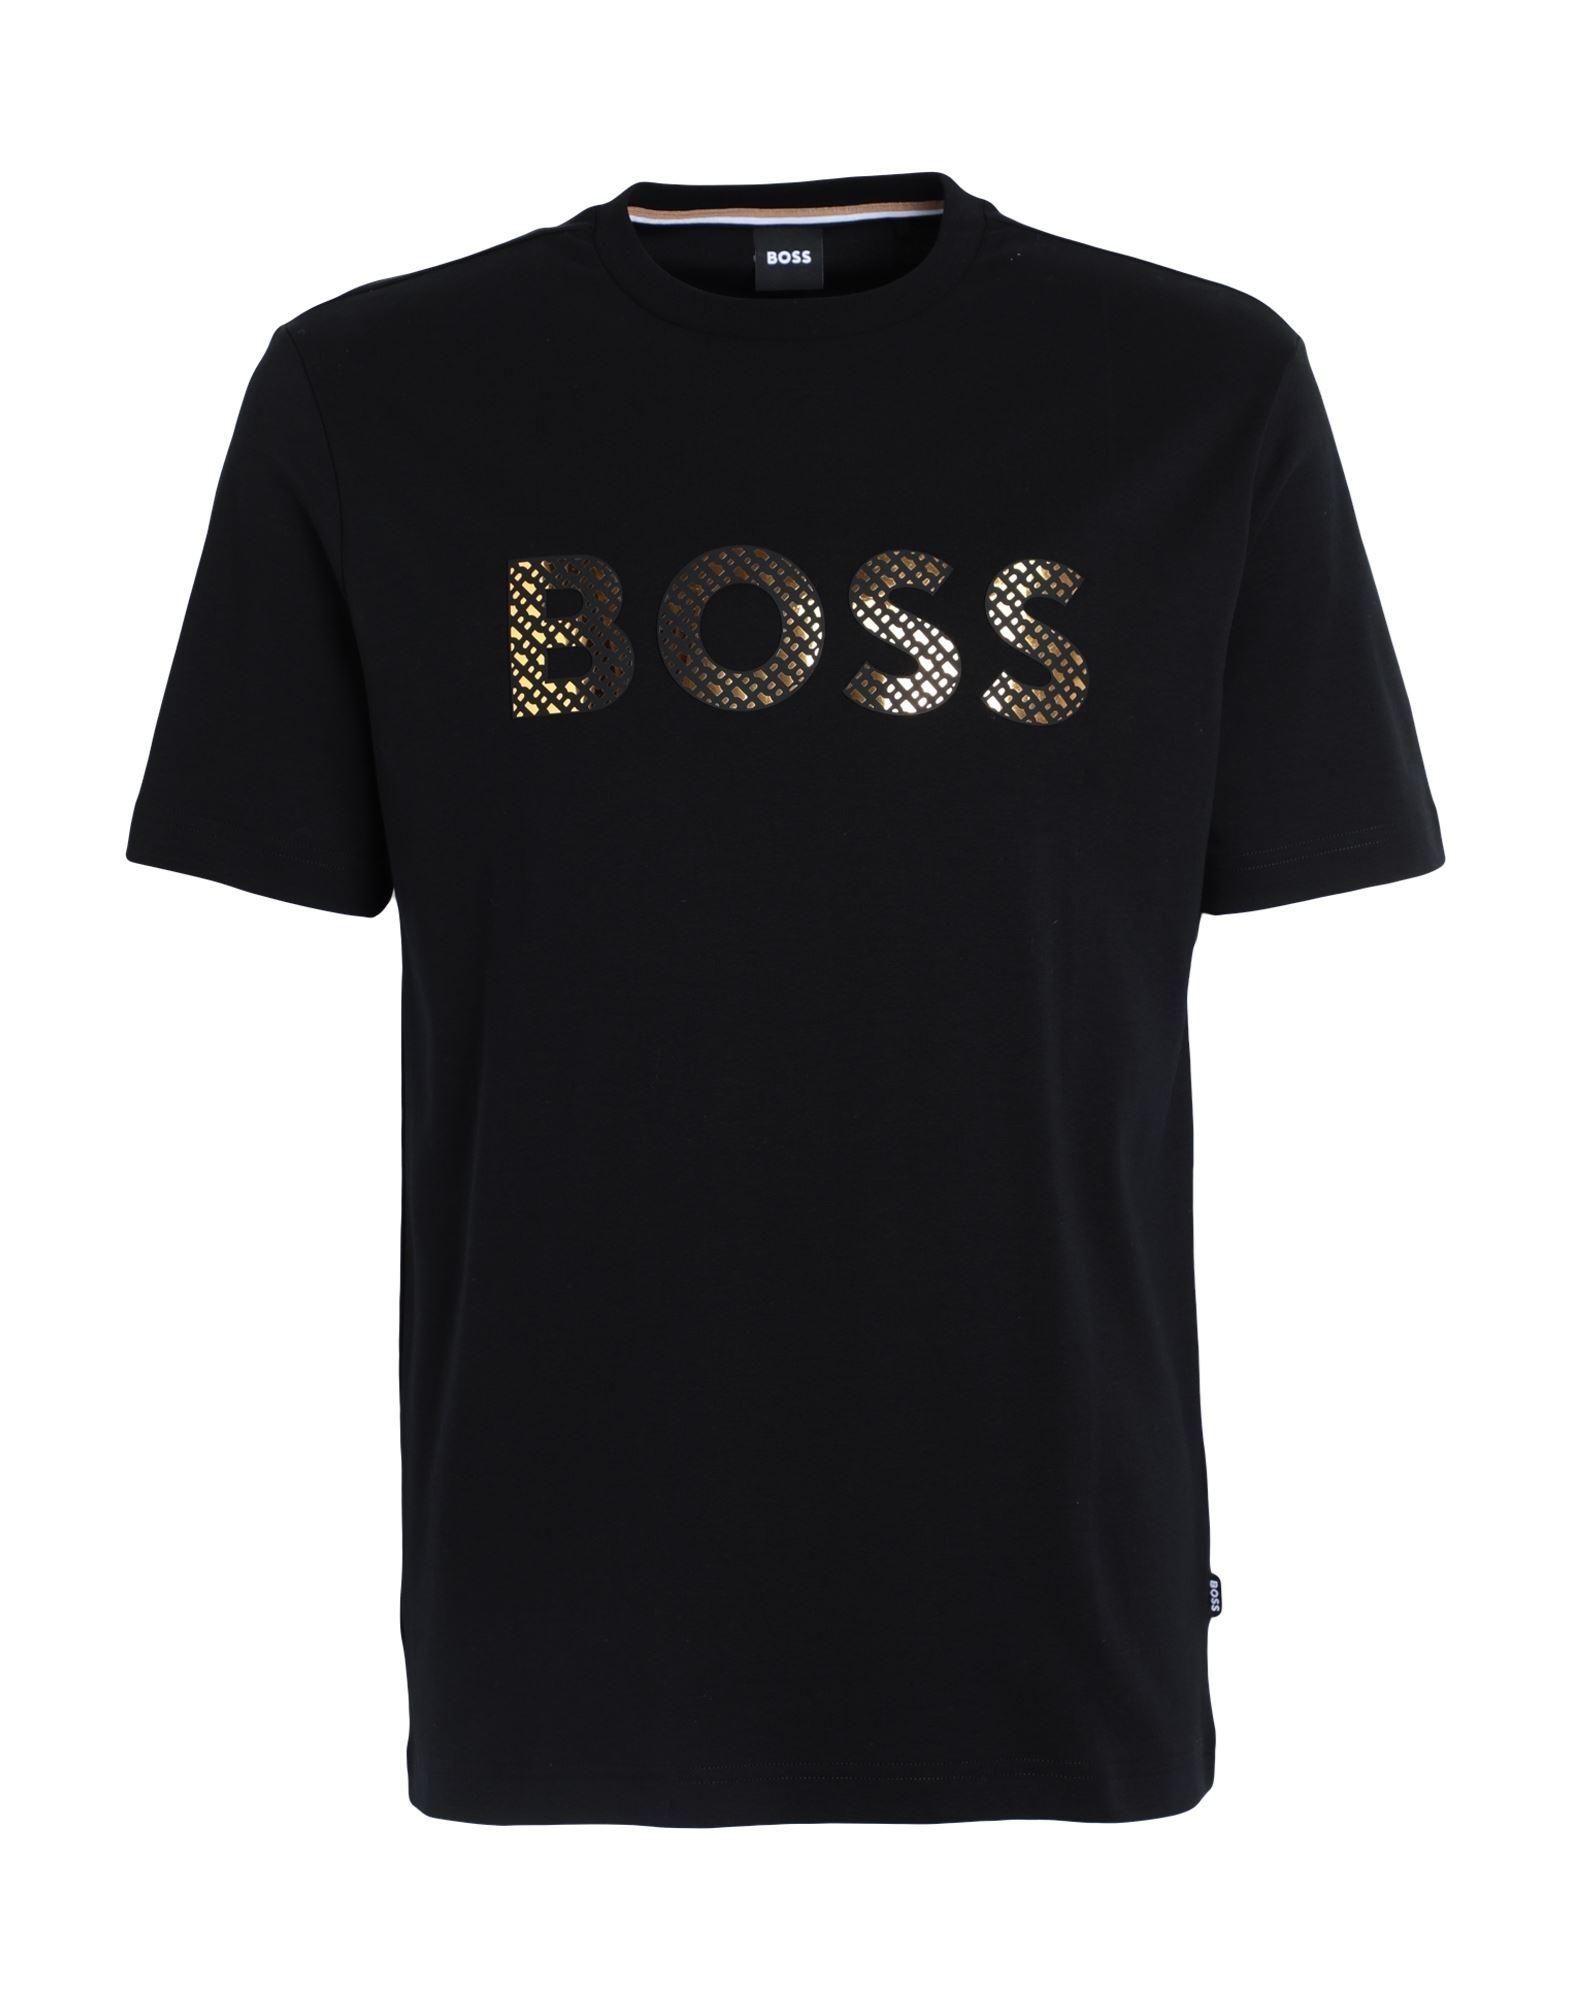 BOSS by HUGO BOSS T-shirt in Black for Men | Lyst